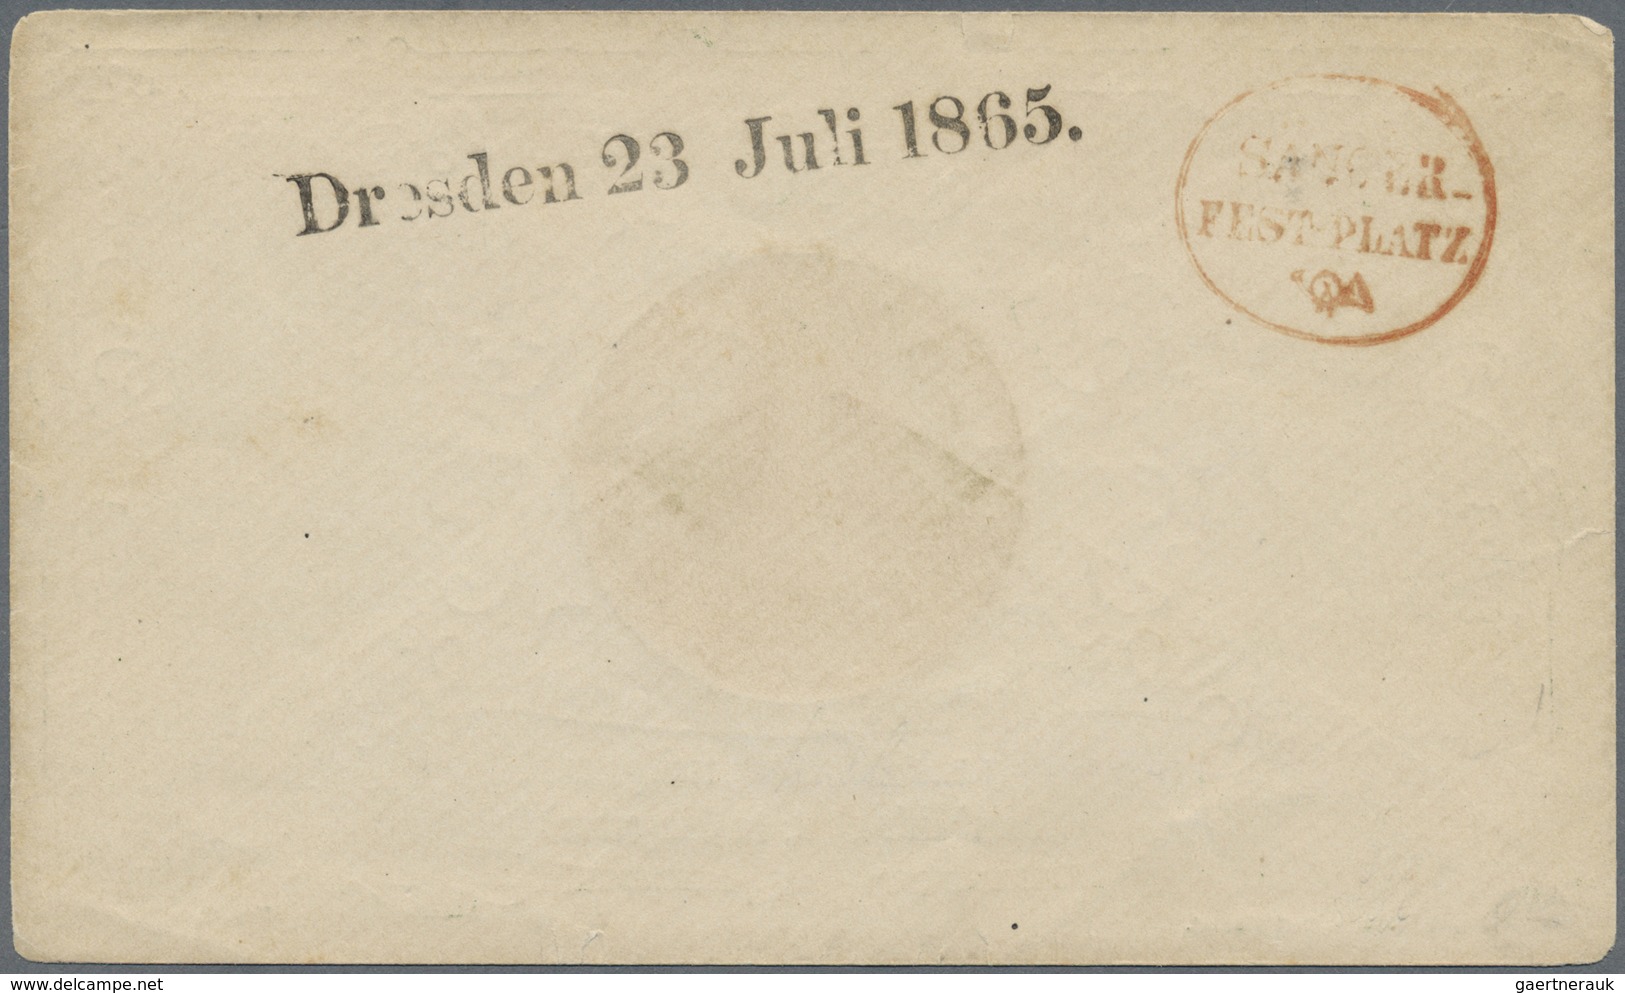 Br Sachsen - Ortsstempel: "Dresden 23 Juli 1865" Schwarzer L1 Und Roter Ovalstpl. "SÄNGER-FESTPLATZ" Au - Sachsen